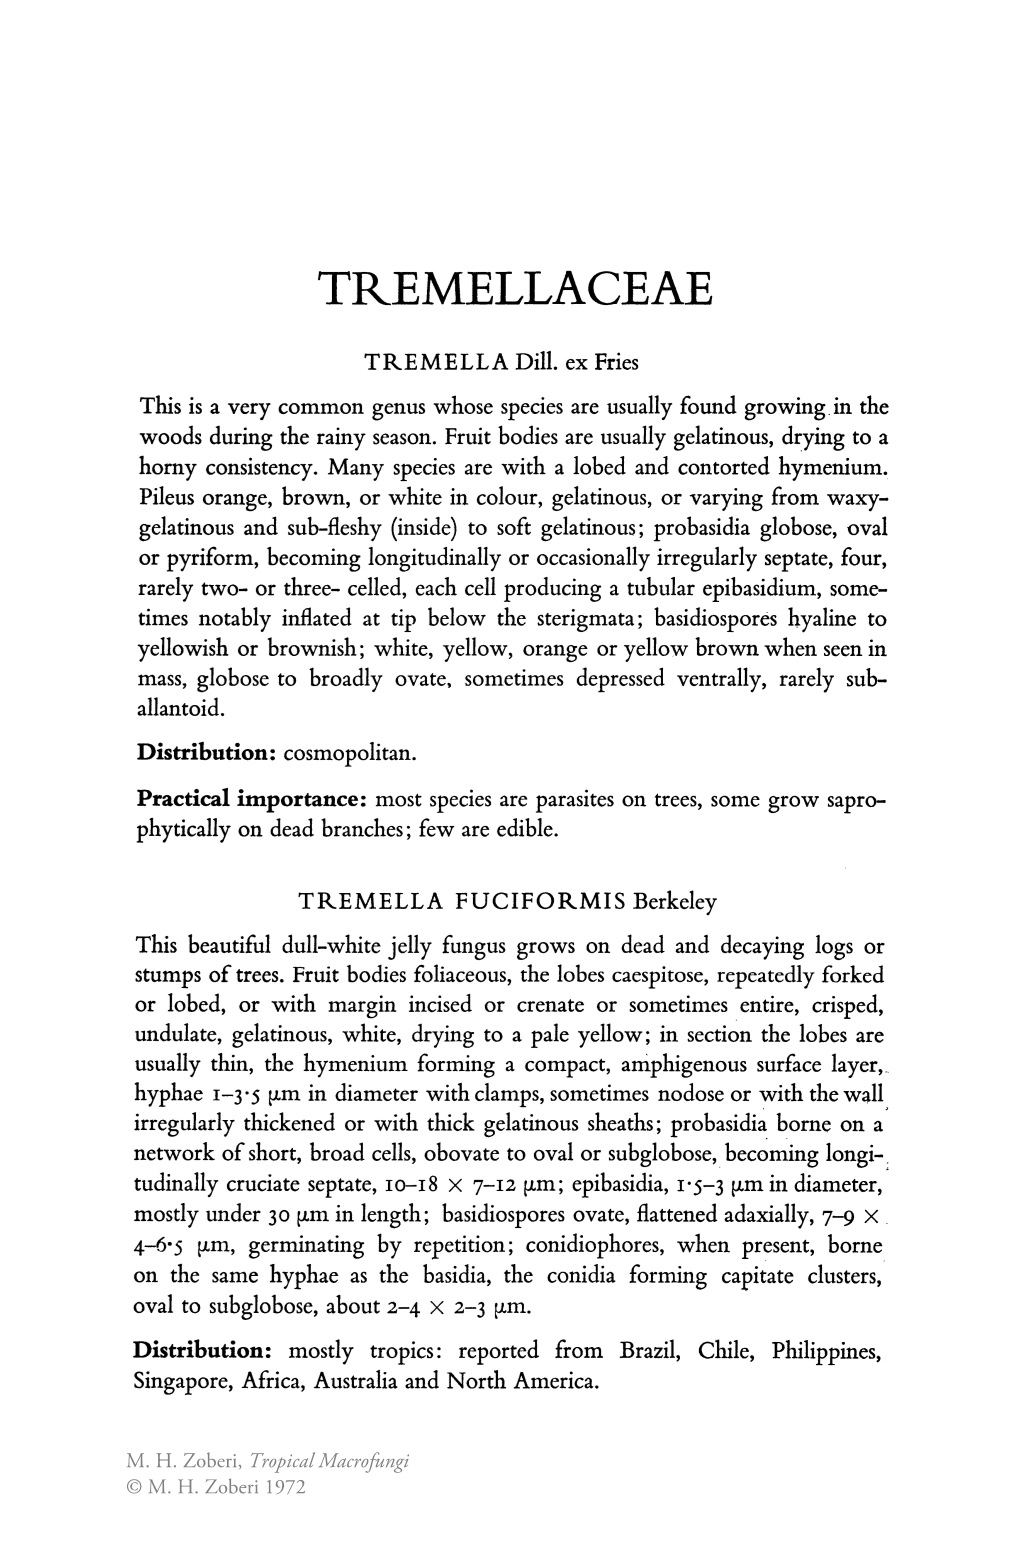 Tremellaceae